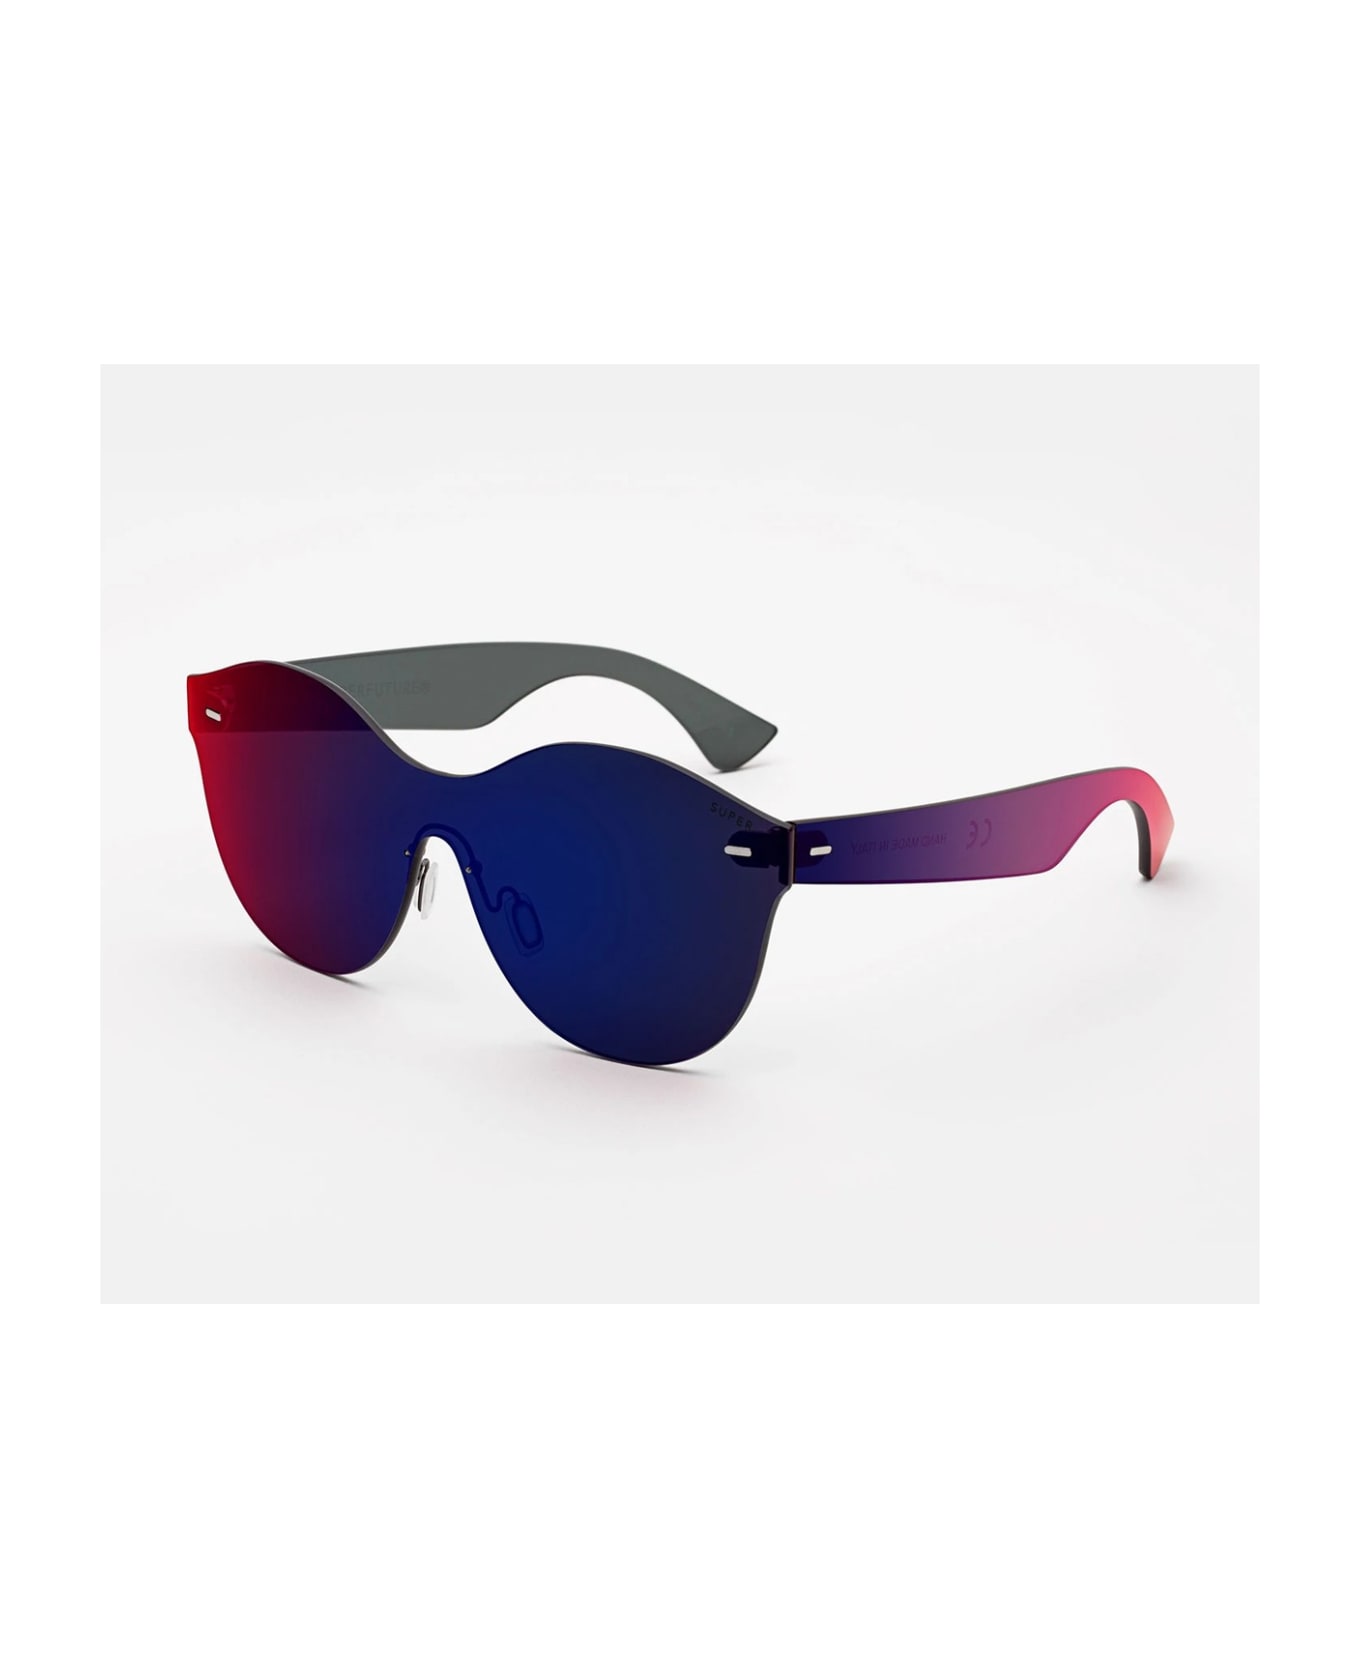 RETROSUPERFUTURE Super Tutto Lente Mona Infrared Sunglasses - Multicolore サングラス